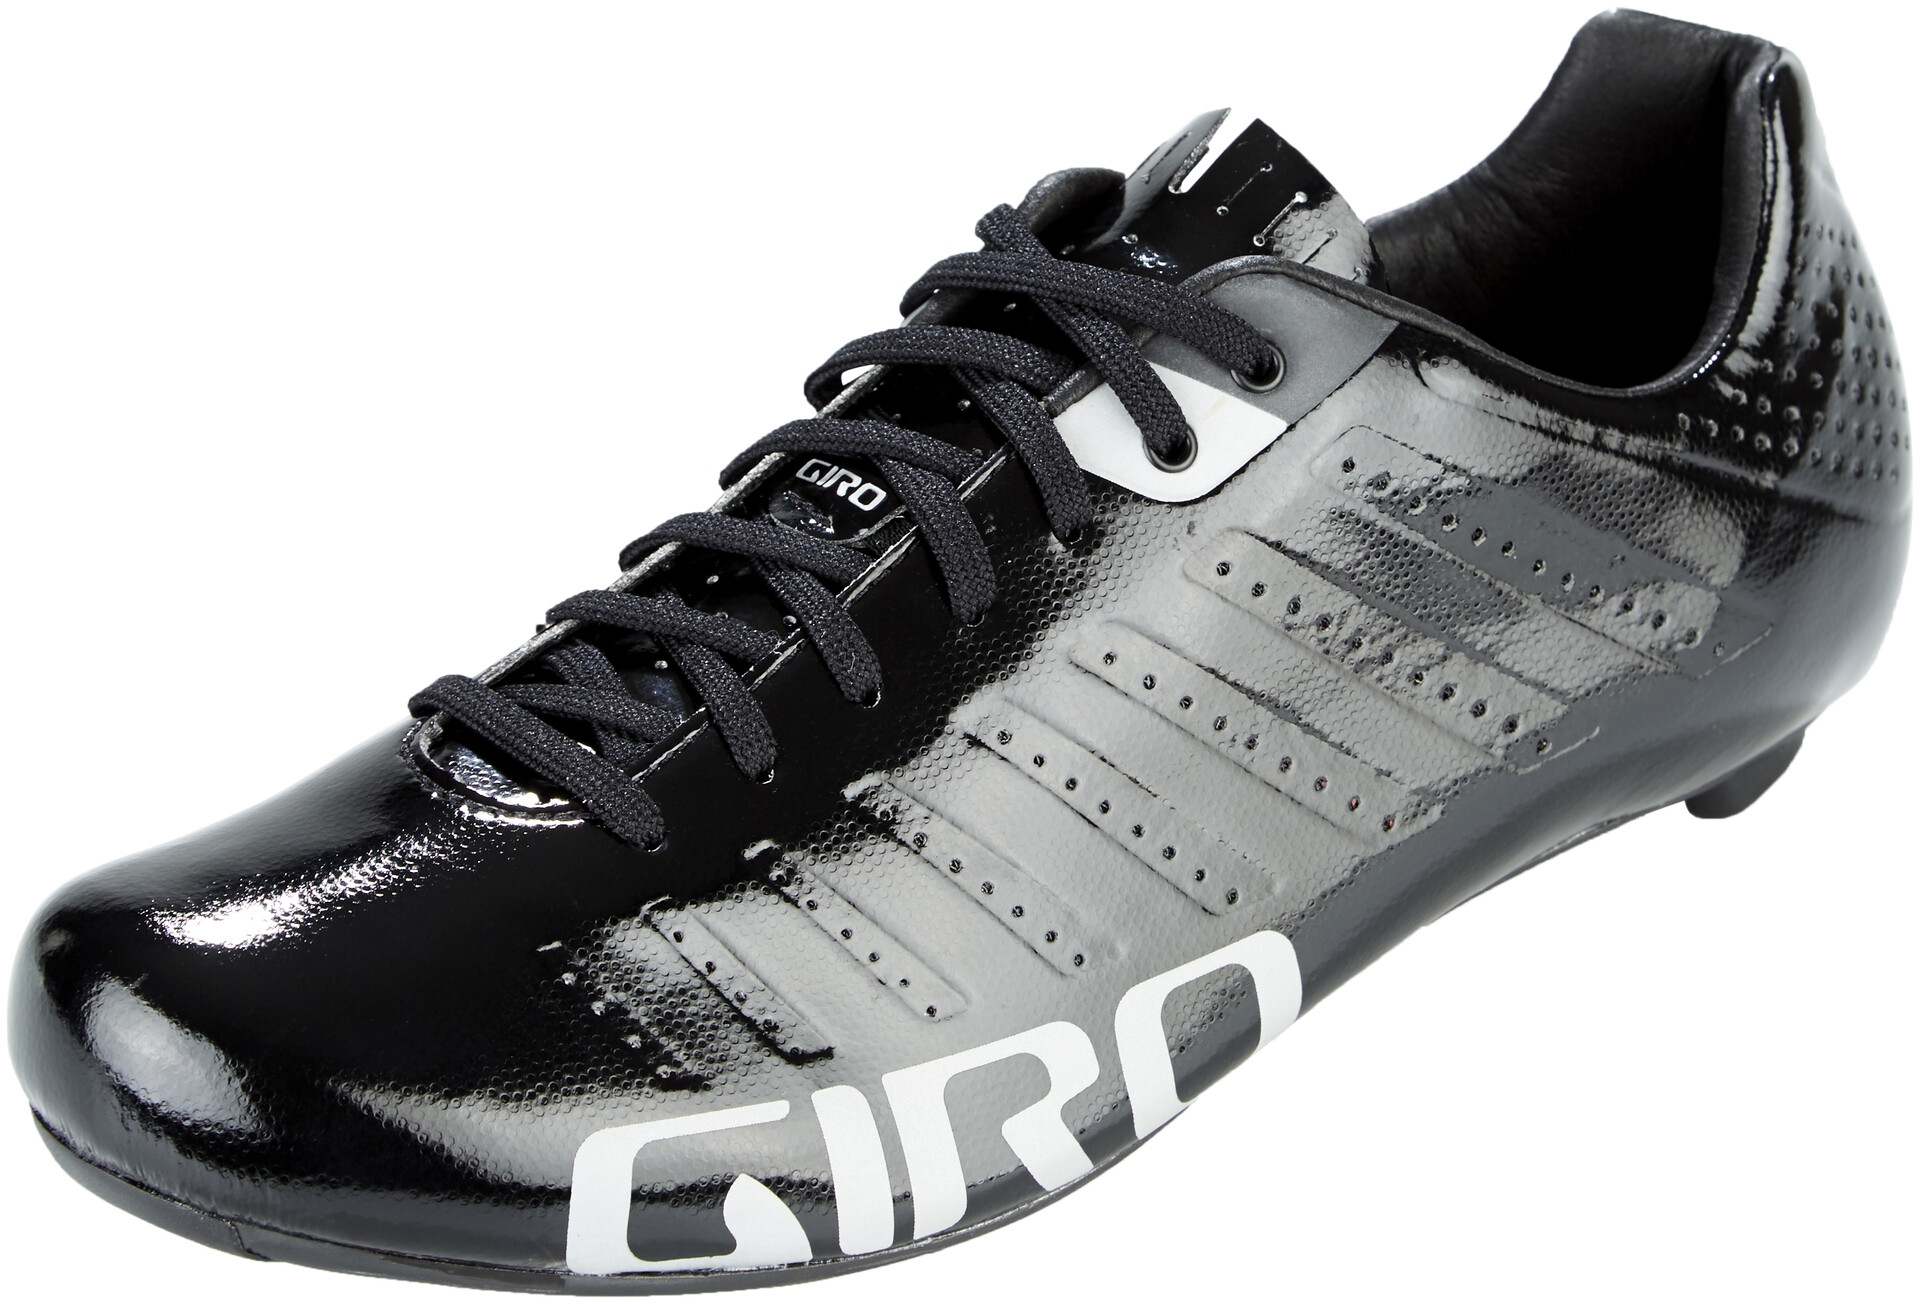 giro empire slx shoes